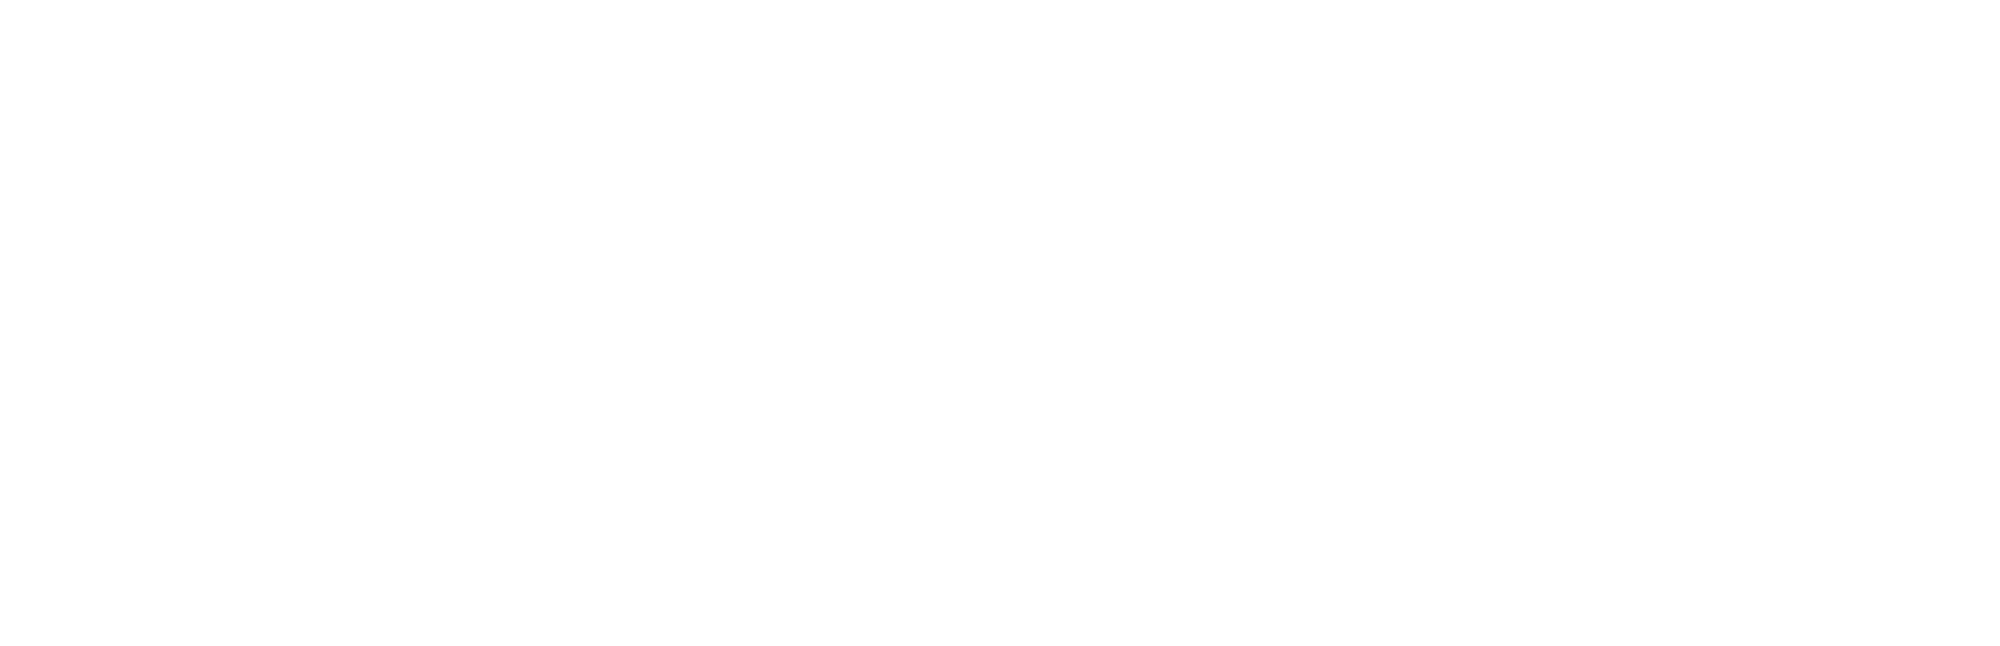 beardie buddy 